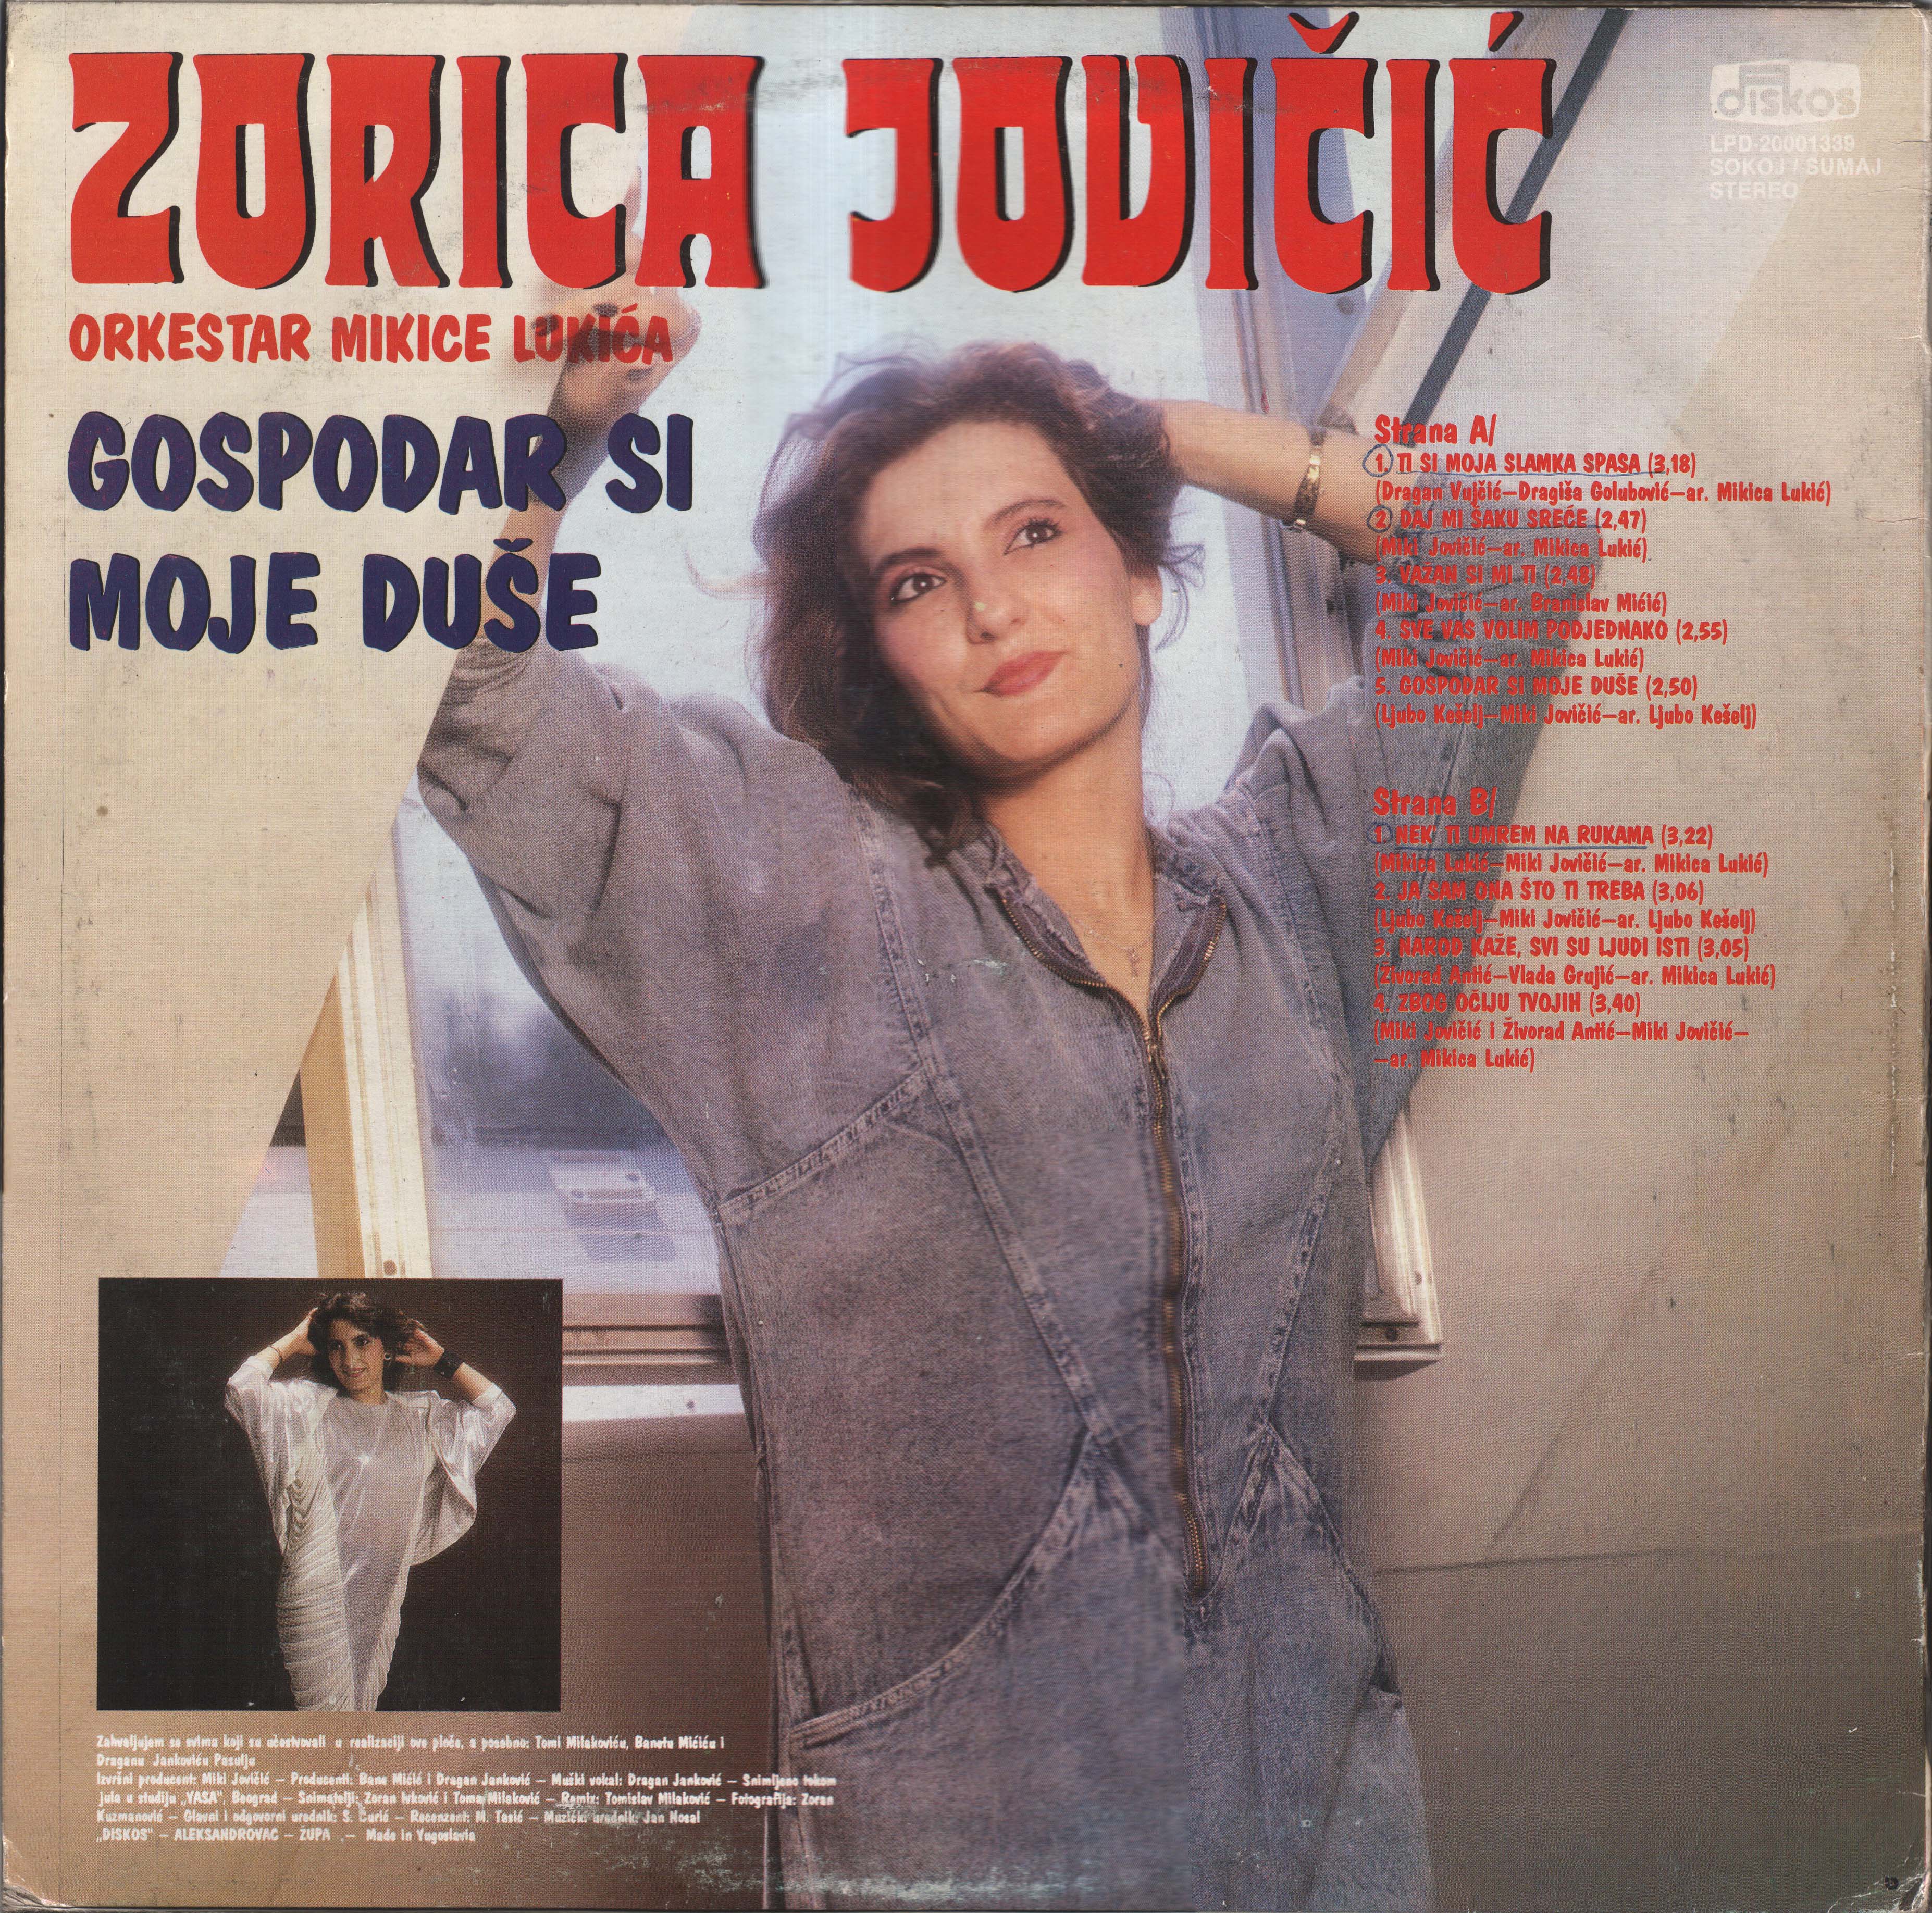 Zorica Jovicic 1989 Z